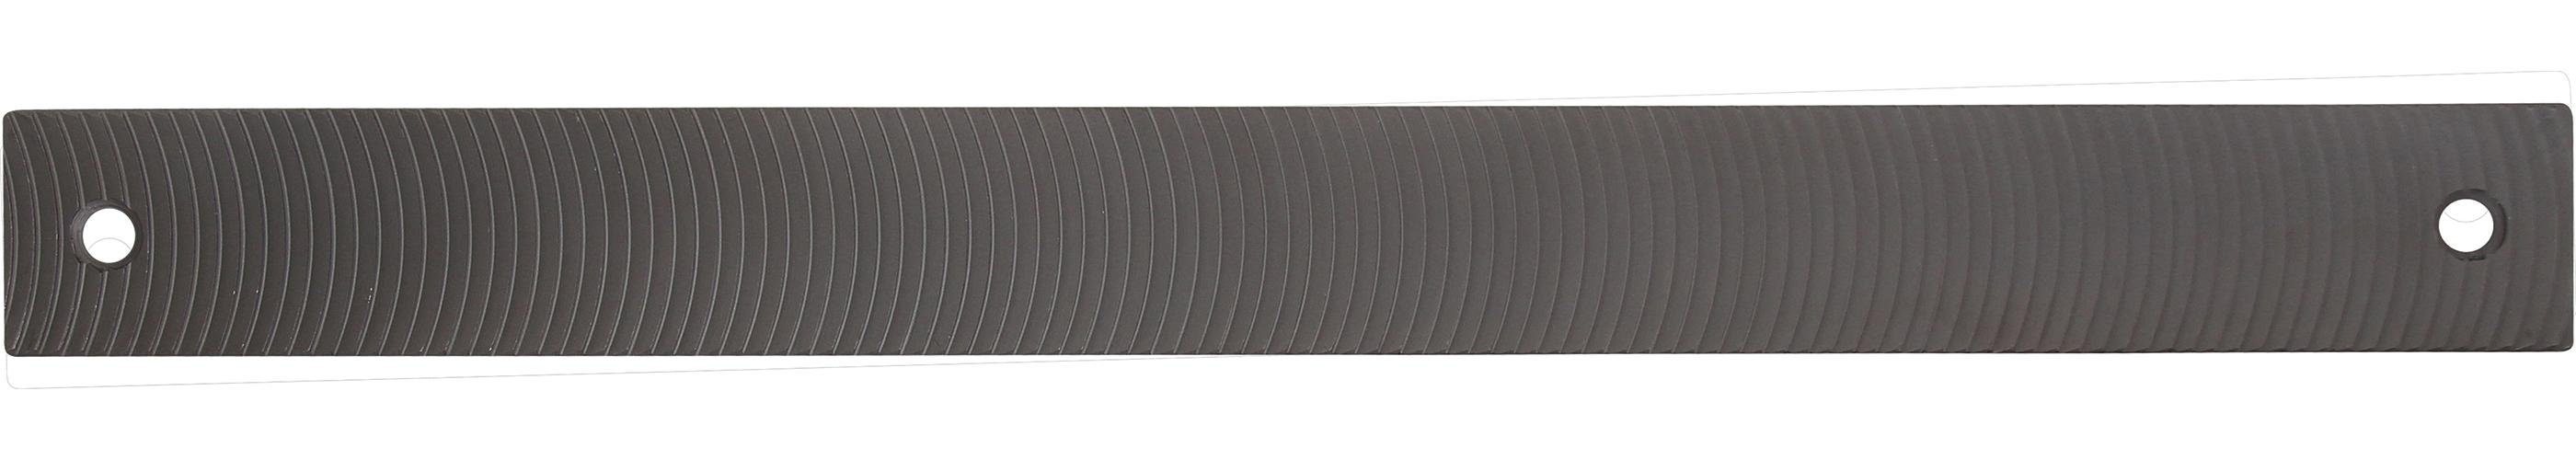 BGS technic Demontagewerkzeug Karosseriefeilenblatt, grob, halbrund gefräst, 350 x 35 x 4 mm